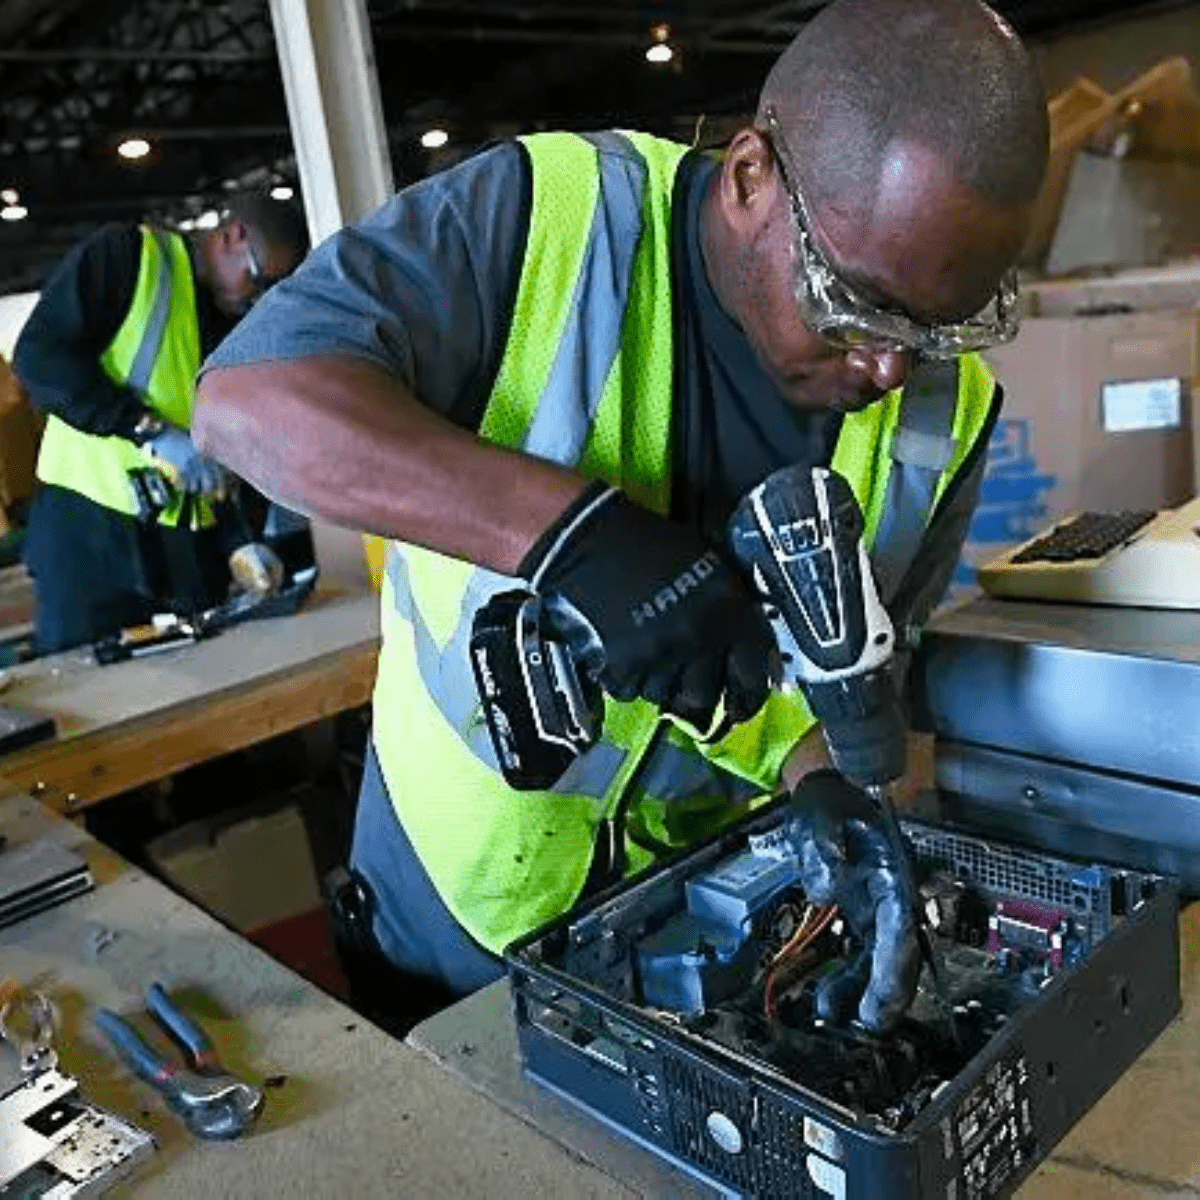 Two Black men in safety vests disassembling desktop computers